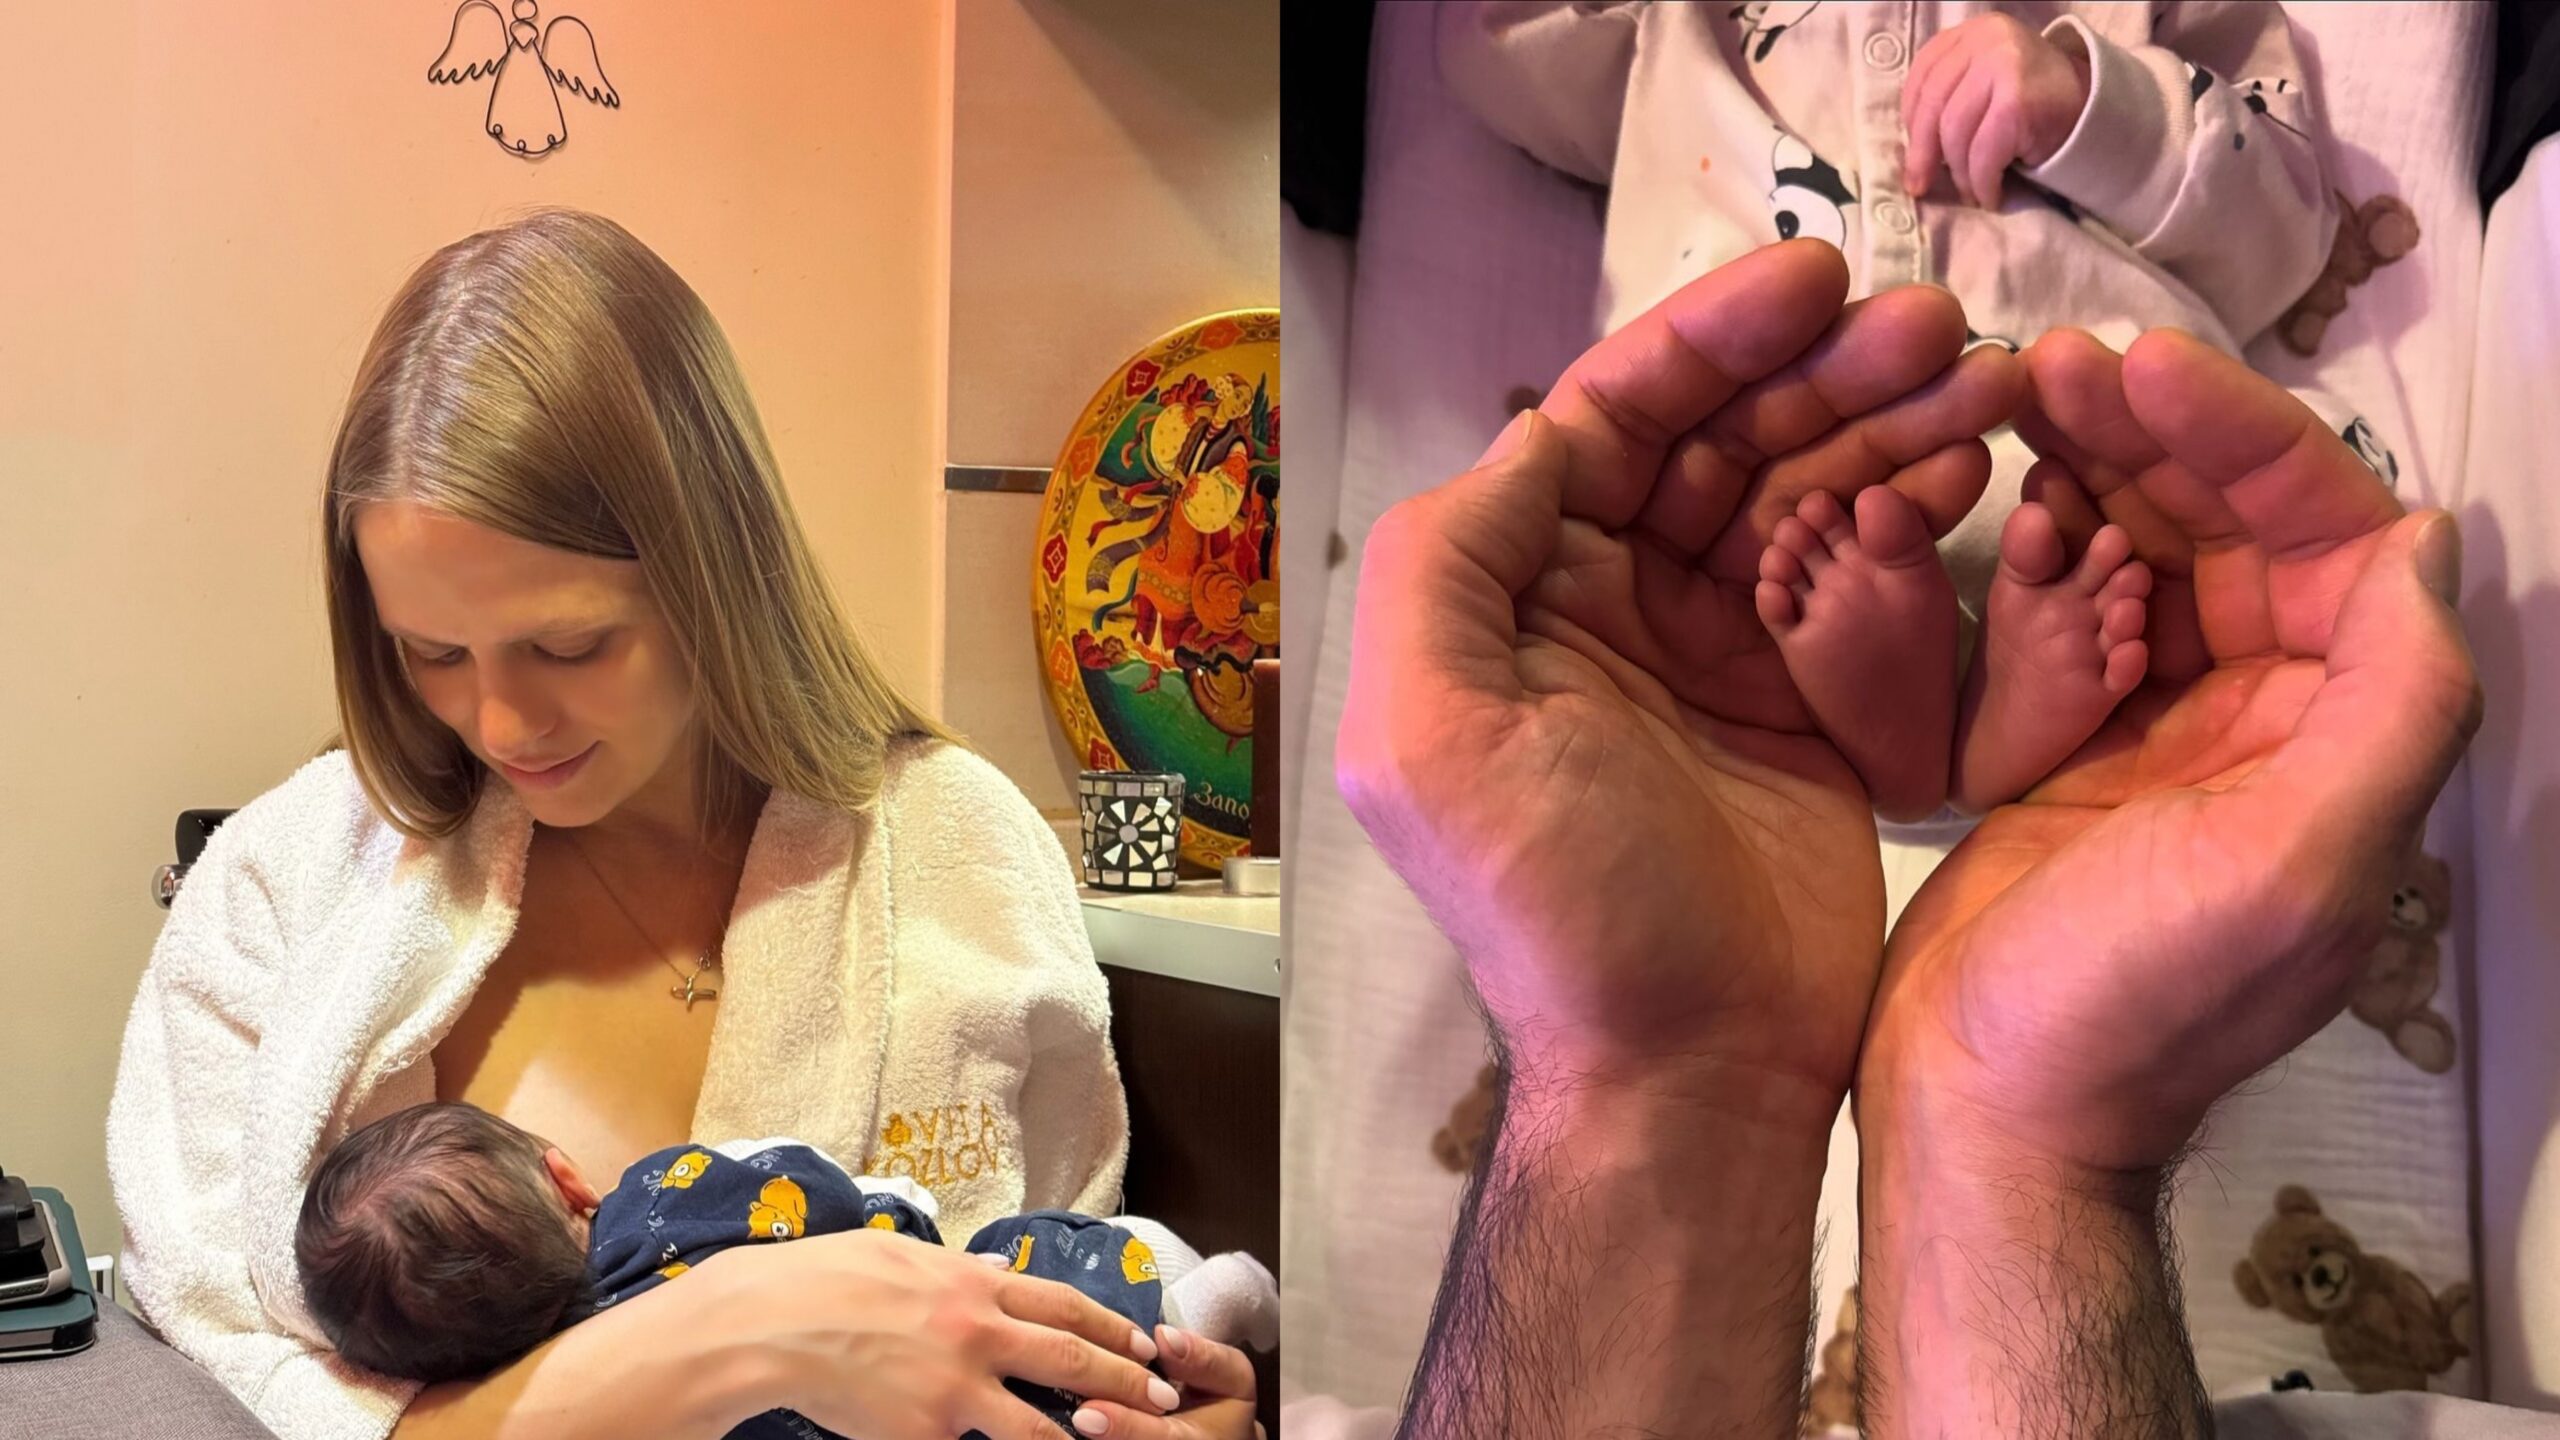 Віталій Козловський показав, як виглядає його двомісячний син. Фото з Instagram @vkozlovsky_music